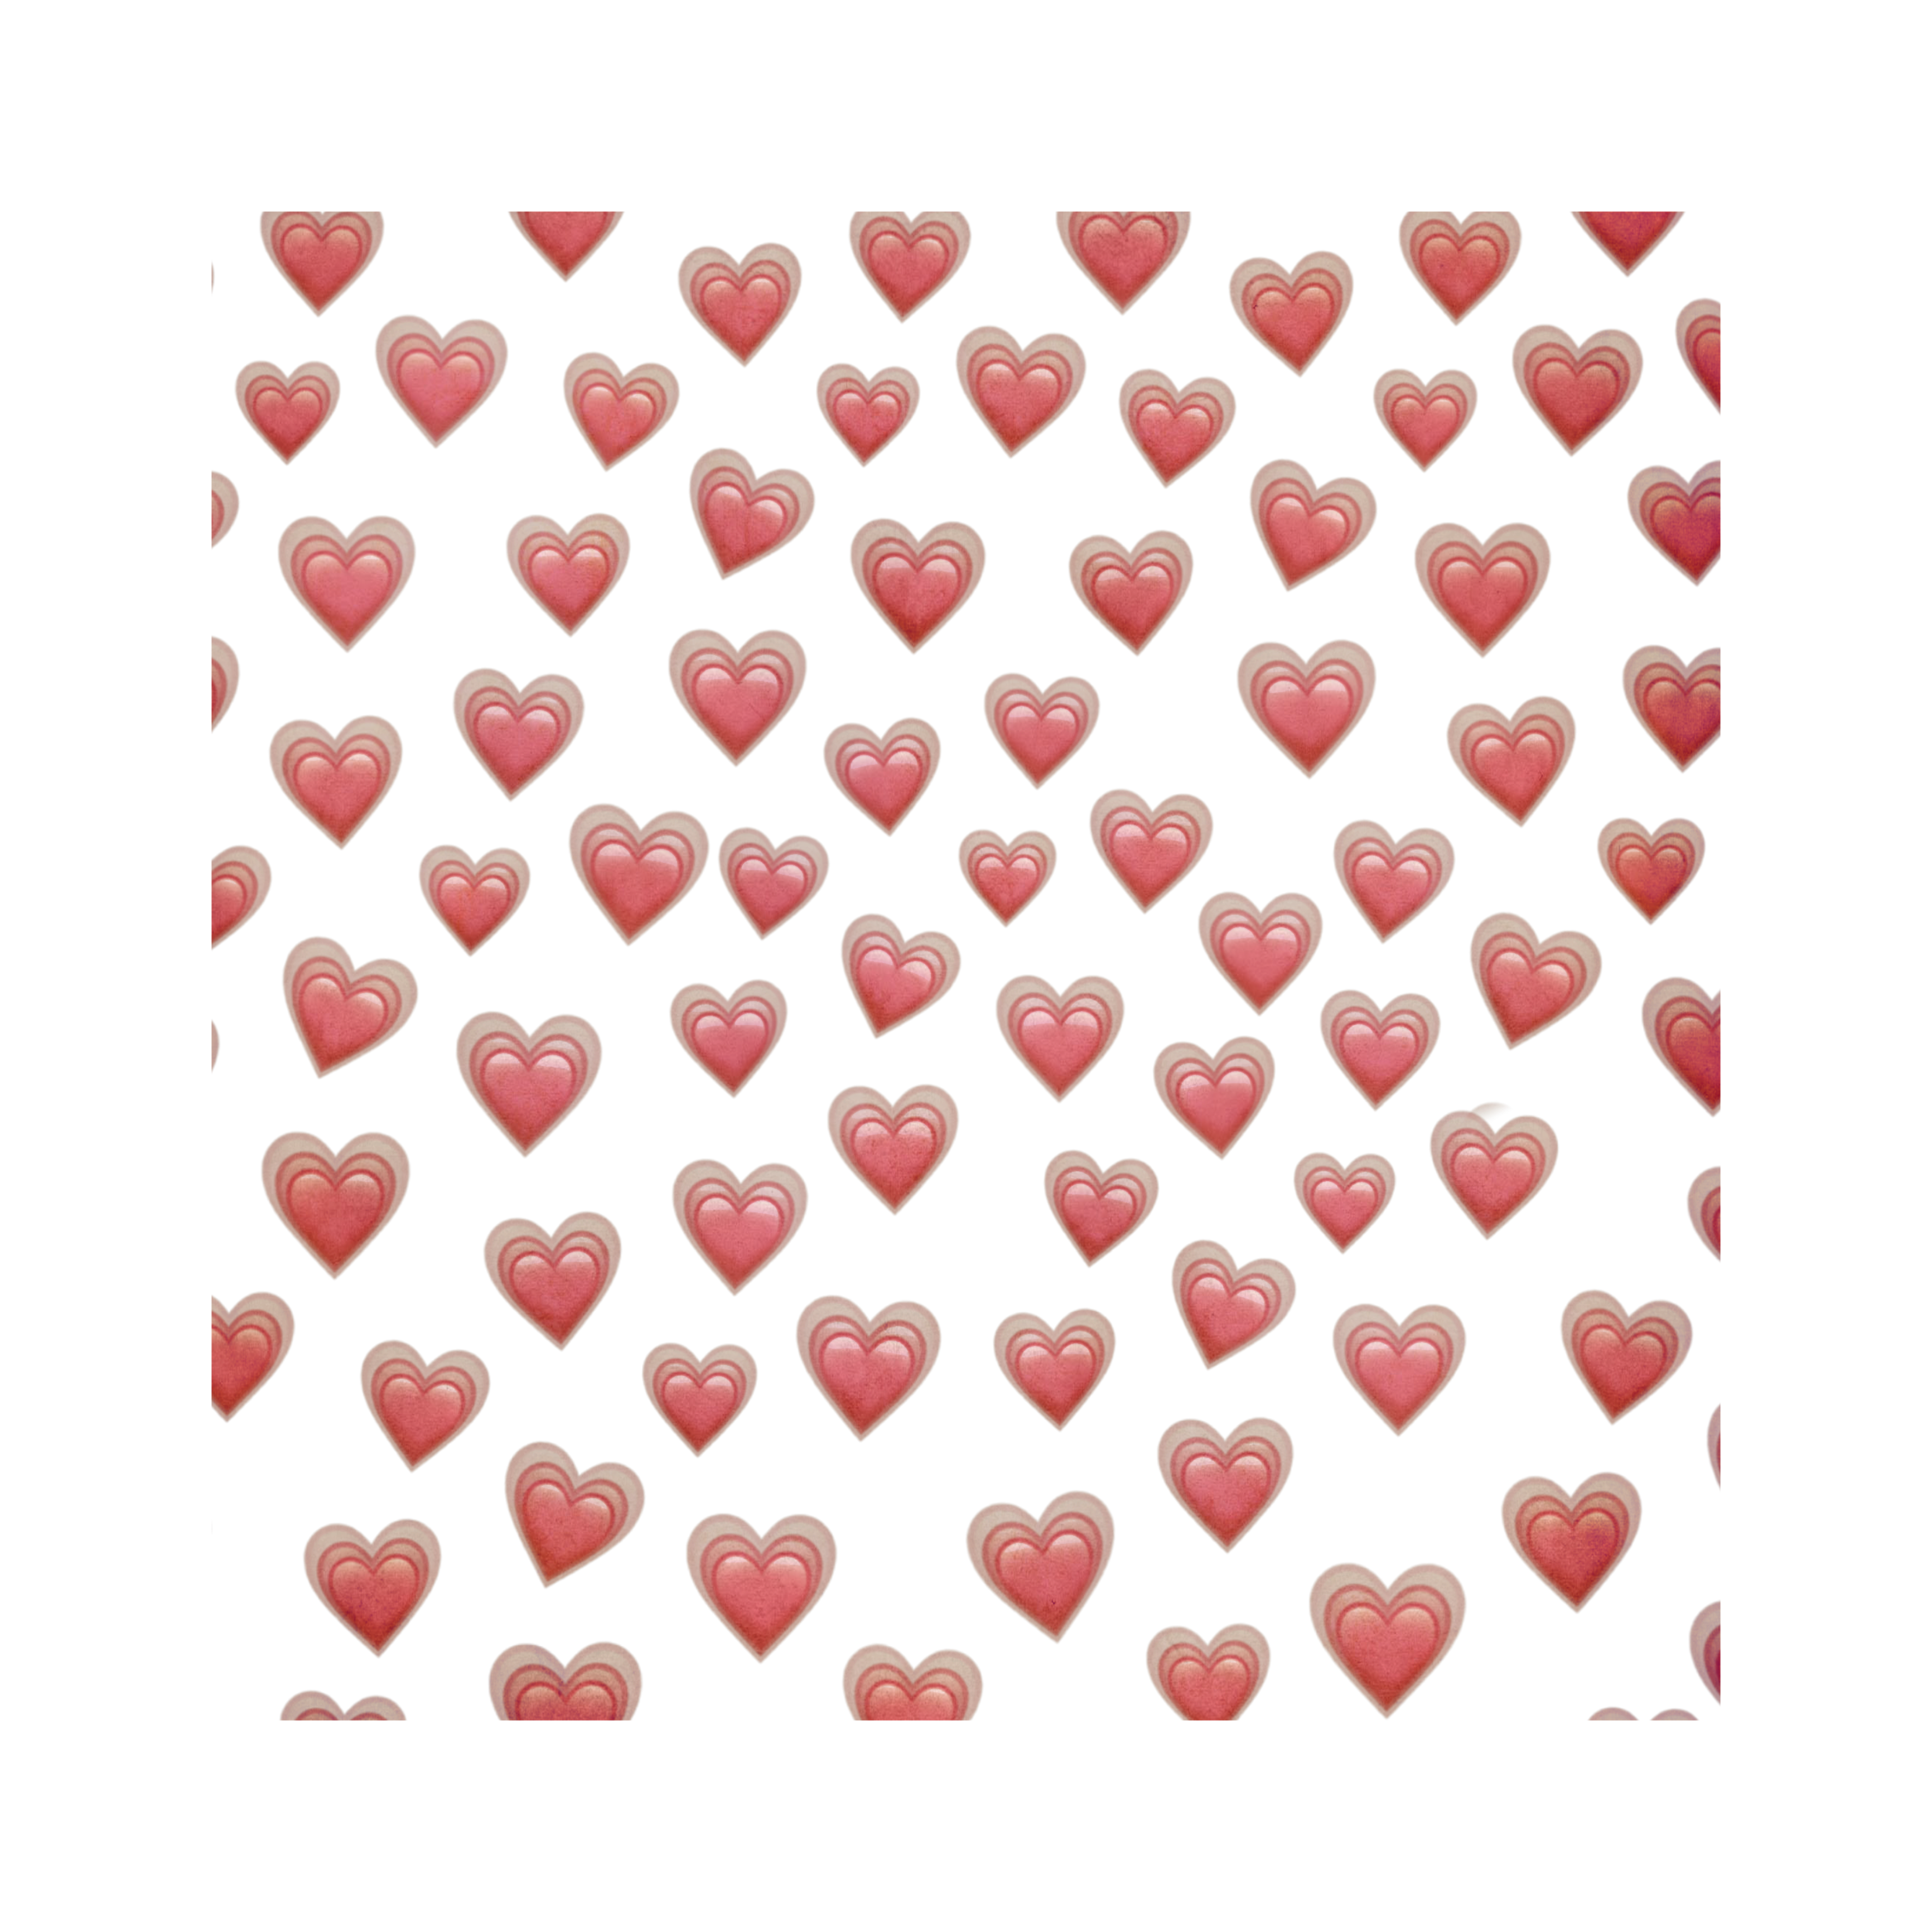 Как сделать анимированное сердечко из сердечек в телеграмме фото 116